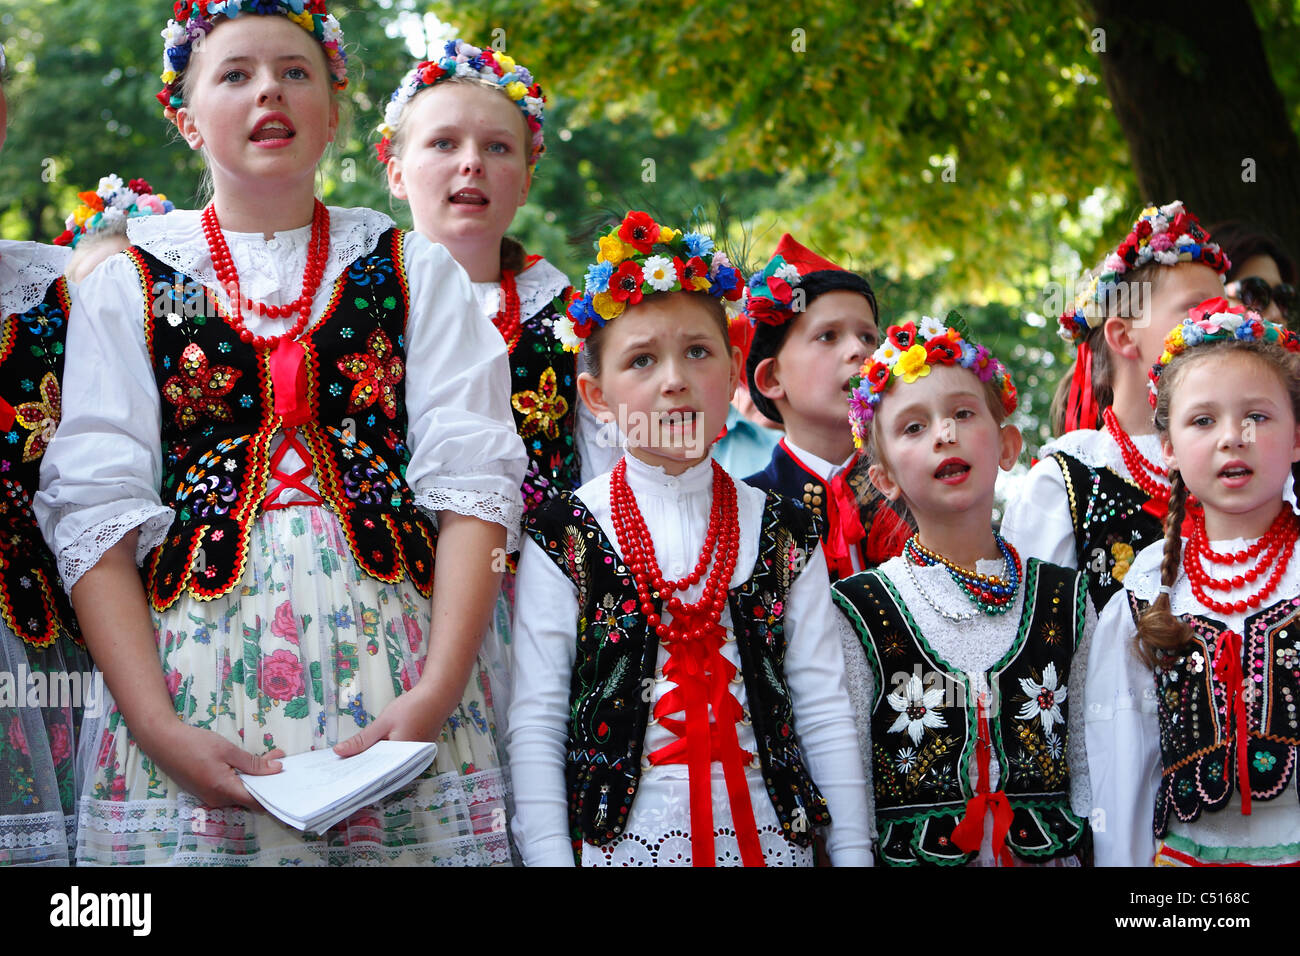 Un groupe d'enfants en costumes folkloriques traditionnels de style de Cracovie au cours d'une exécution musicale. Banque D'Images